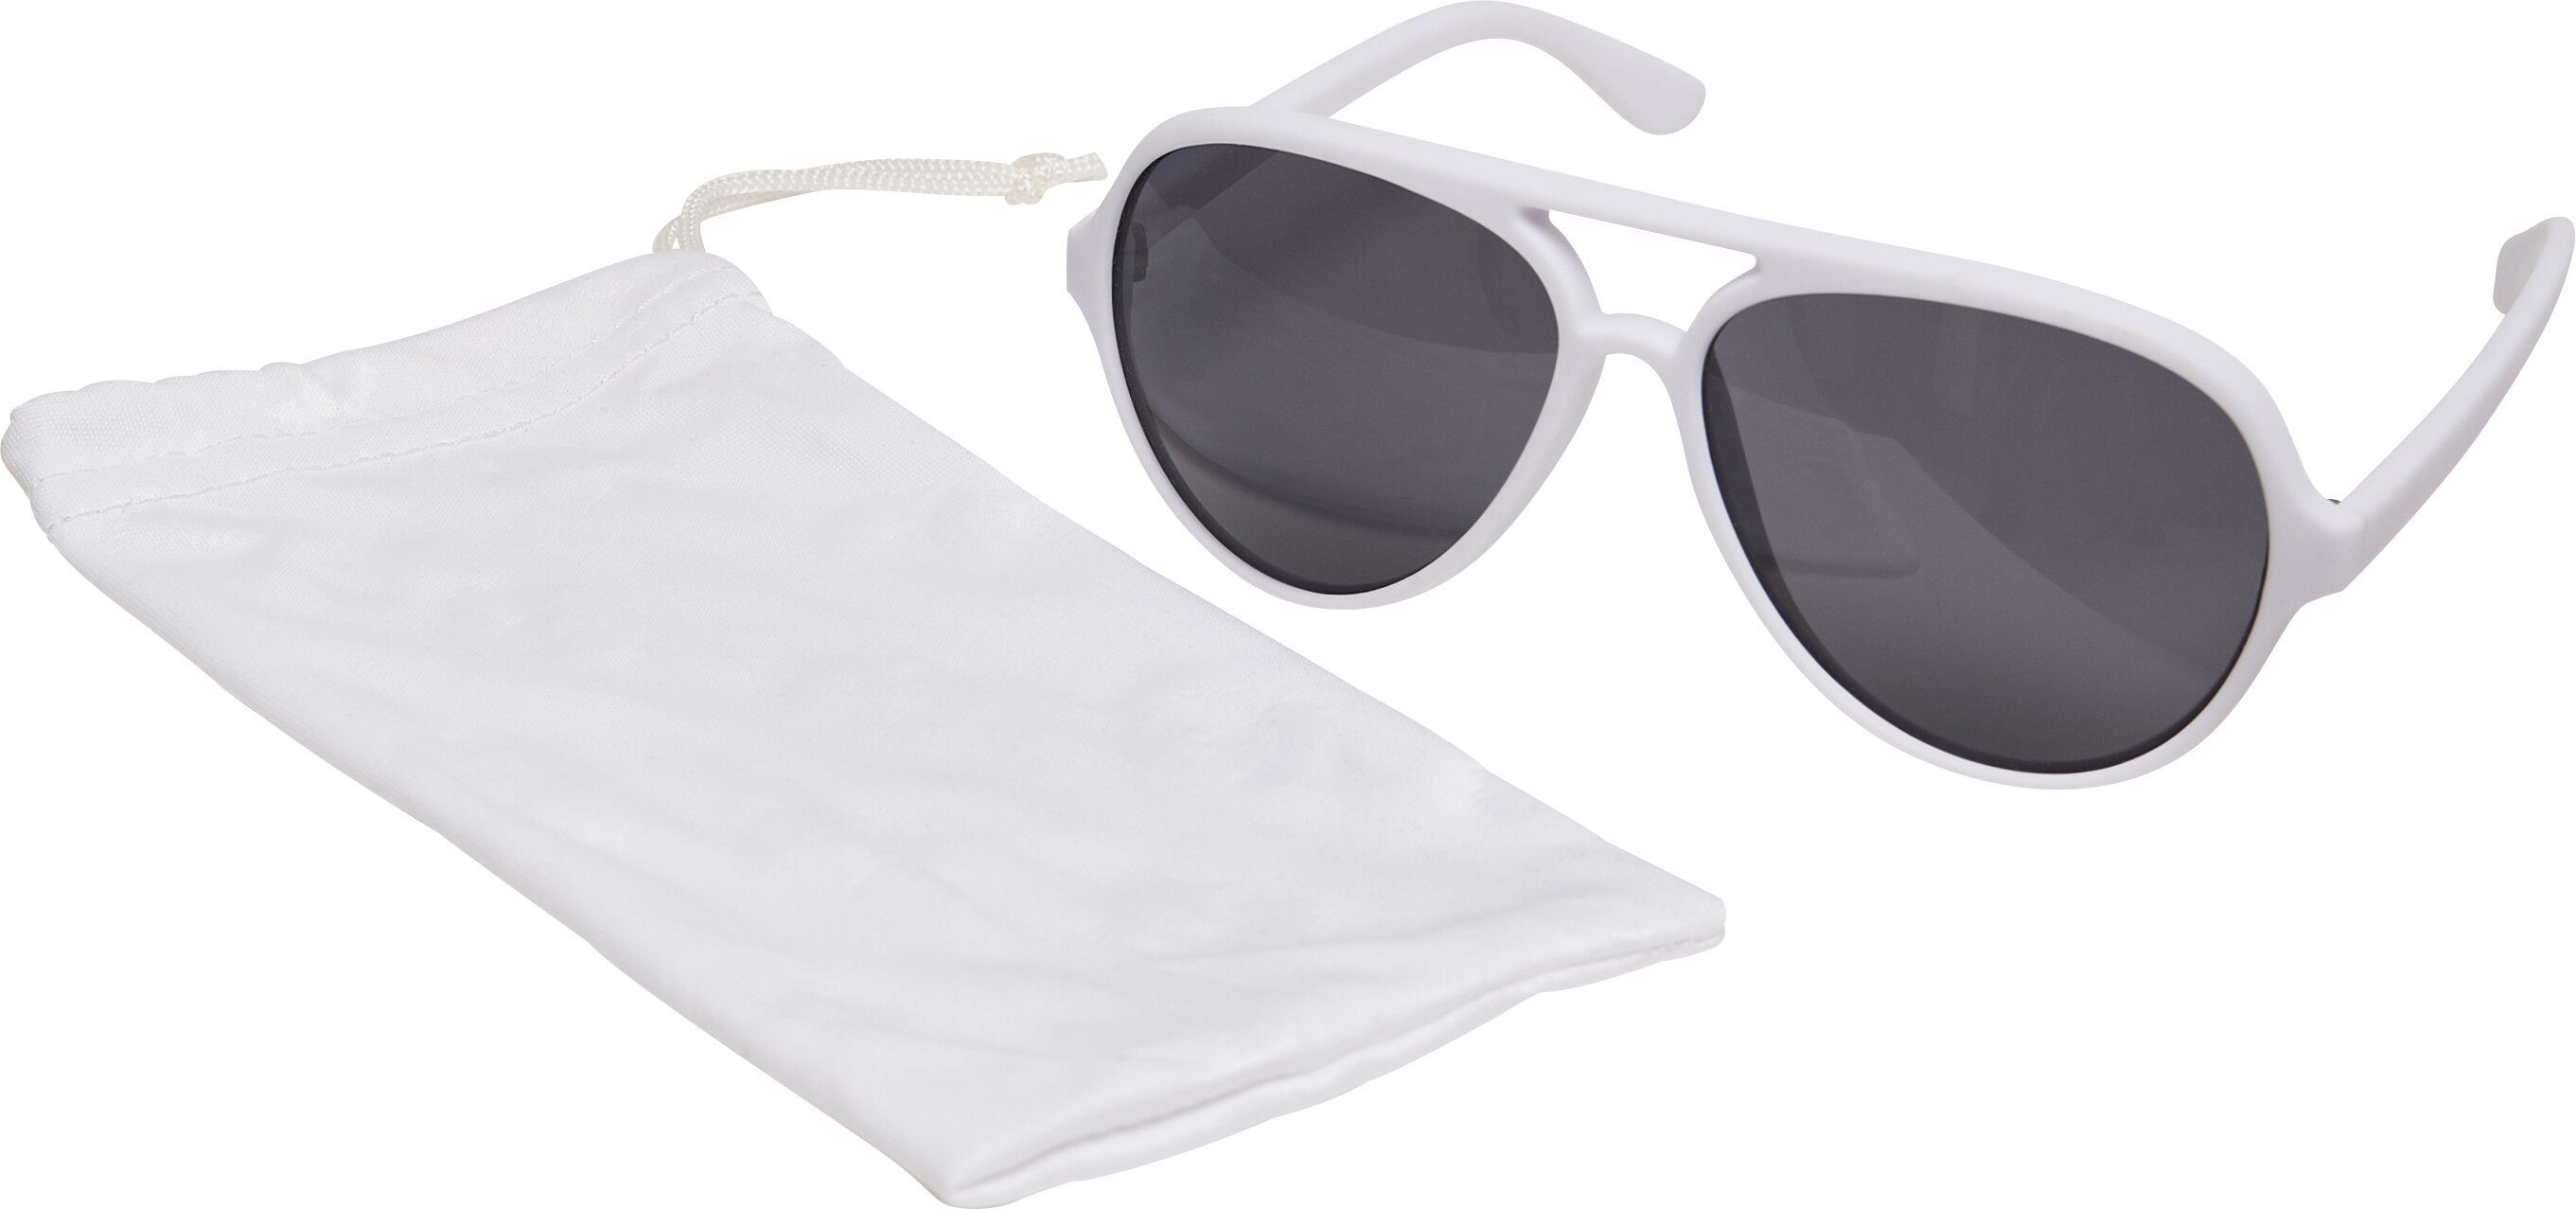 Sunglasses March MSTRDS Sonnenbrille Accessoires white